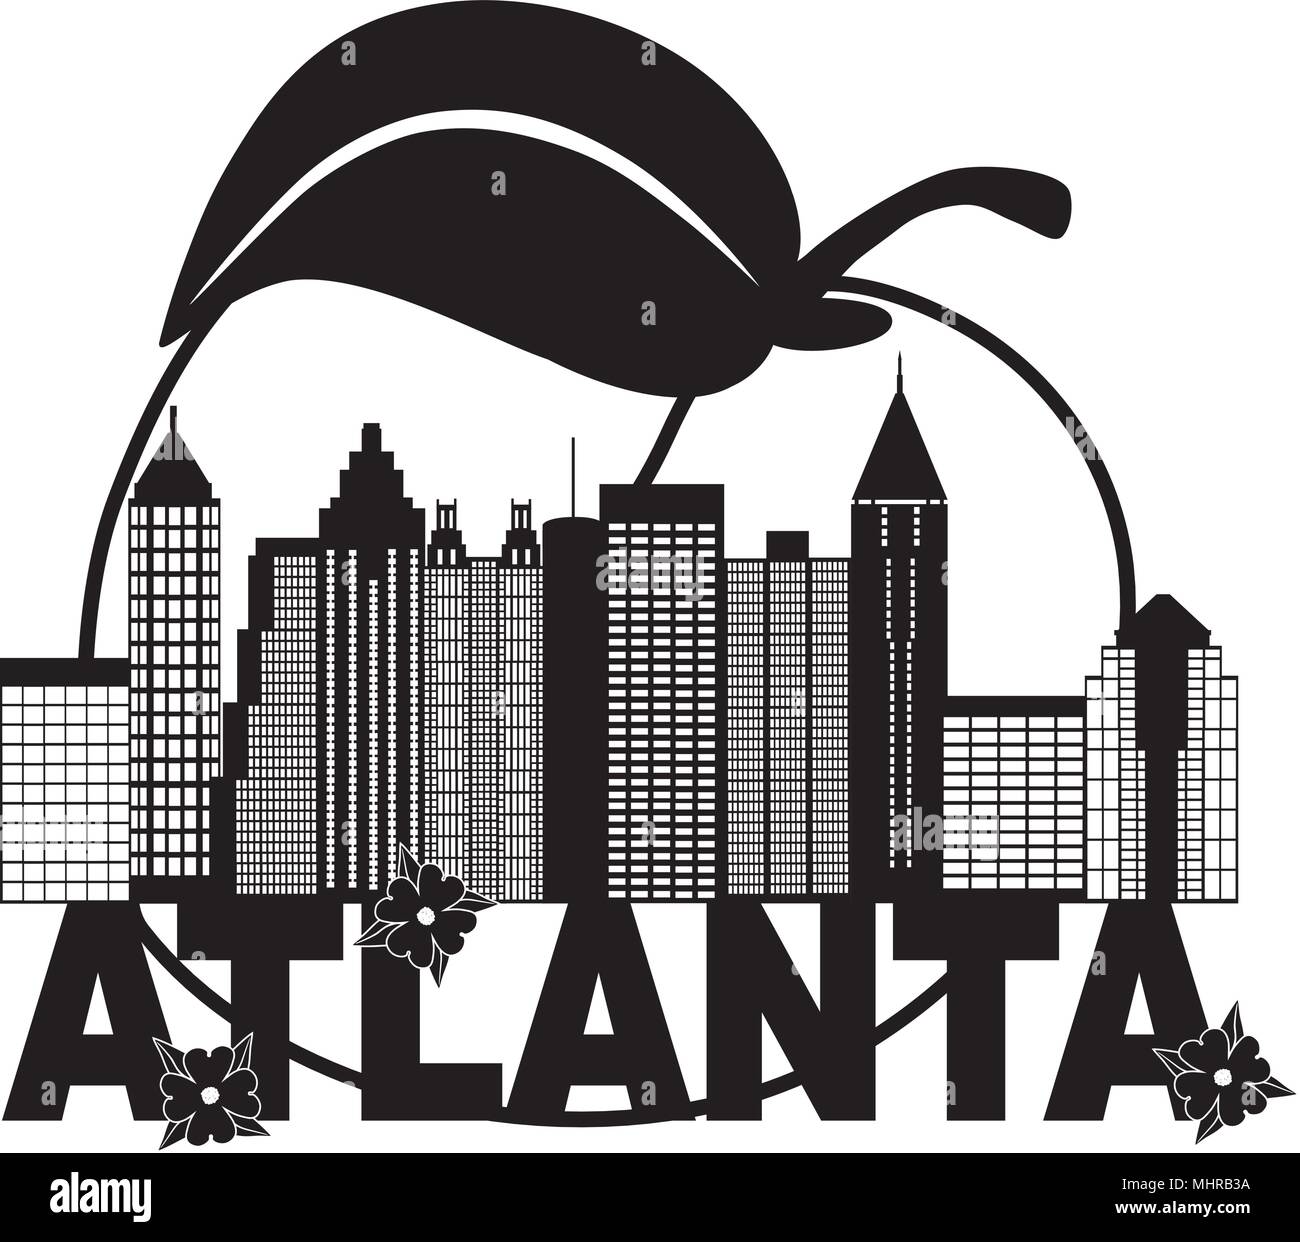 Atlanta Géorgie Ville Résumé avec Peach fleurs de cornouiller d'illustration de texte noir et blanc Illustration de Vecteur